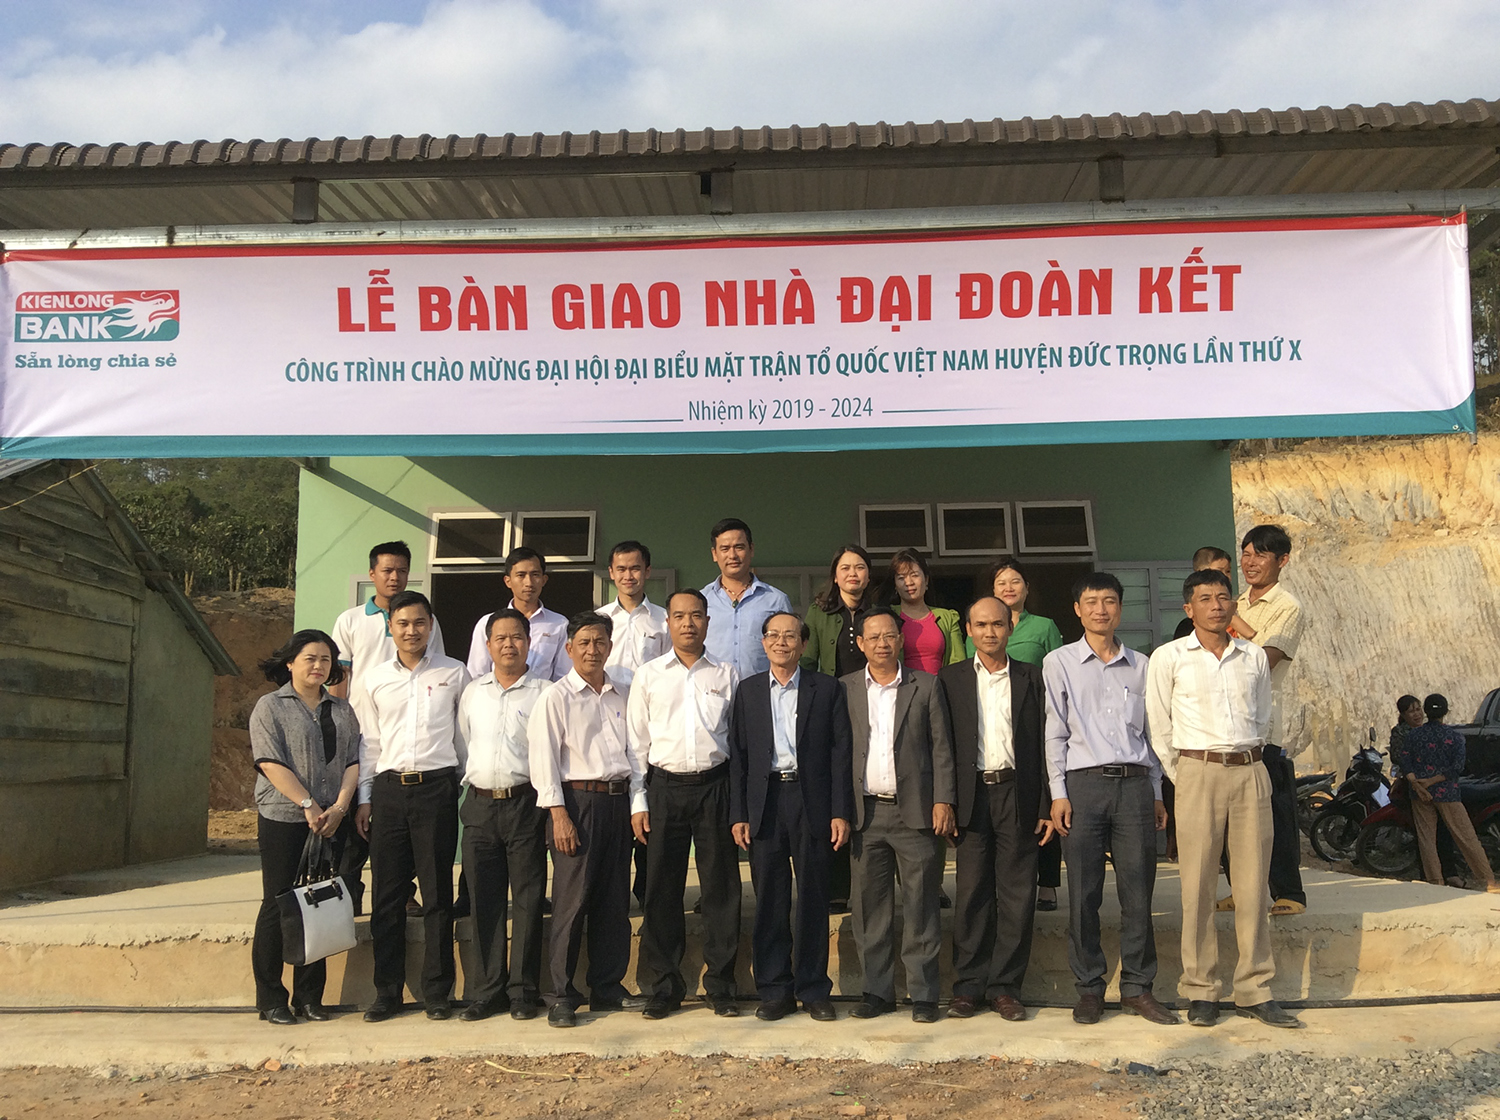 Kienlongbank: Trao nhà Đại đoàn kết cho hộ nghèo huyện Đức Trọng, Lâm Đồng